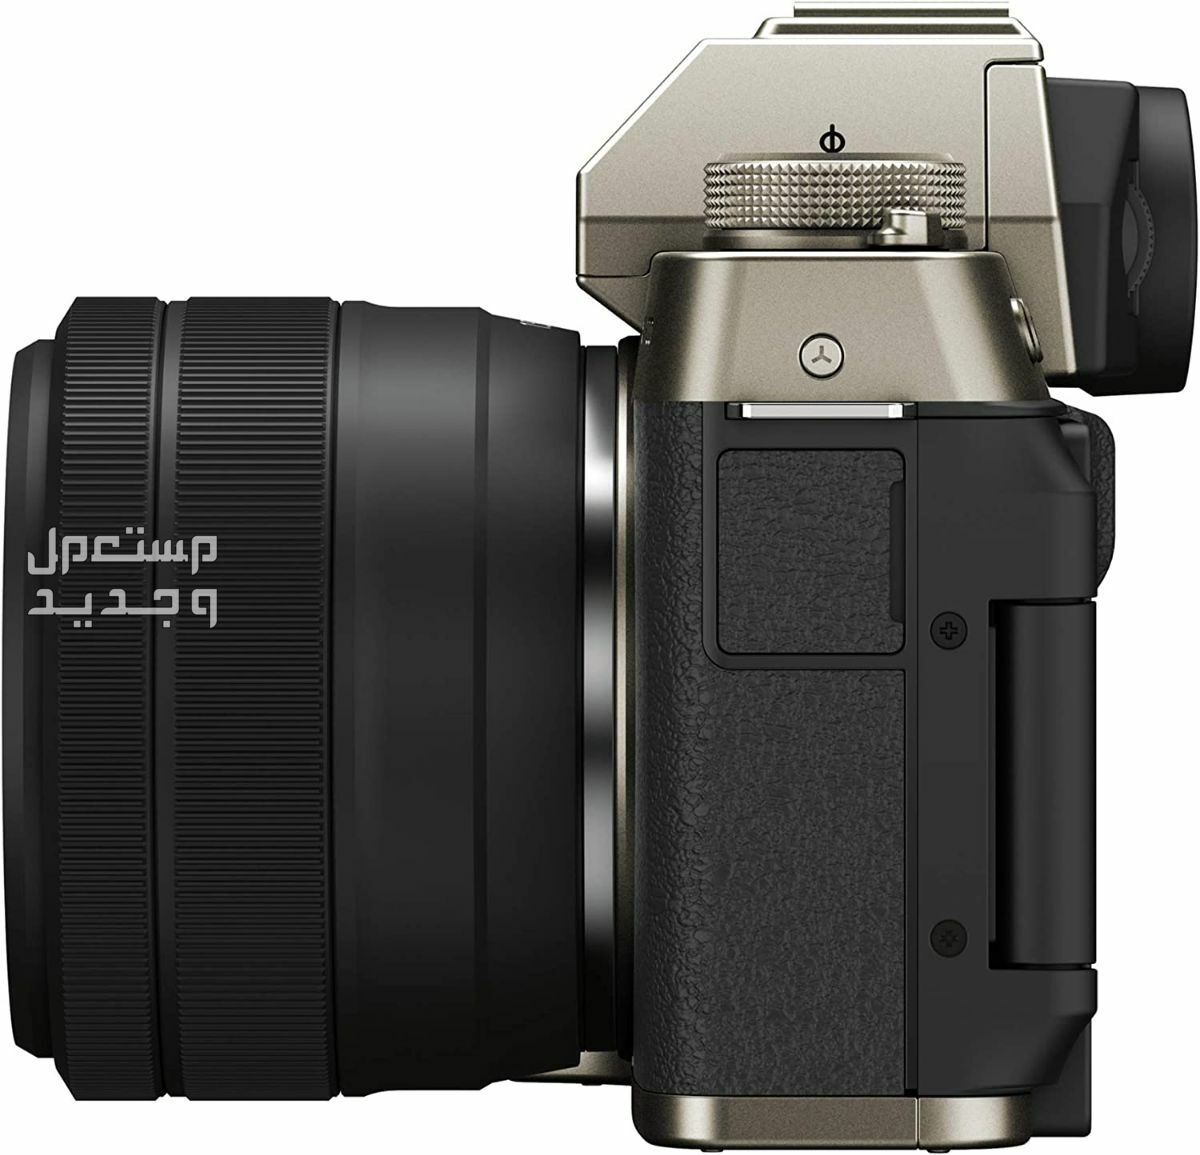 10 كاميرات تصوير ماركات عالمية بأسعار رخيصة في جيبوتي سعر كاميرا Fujifilm X-T200